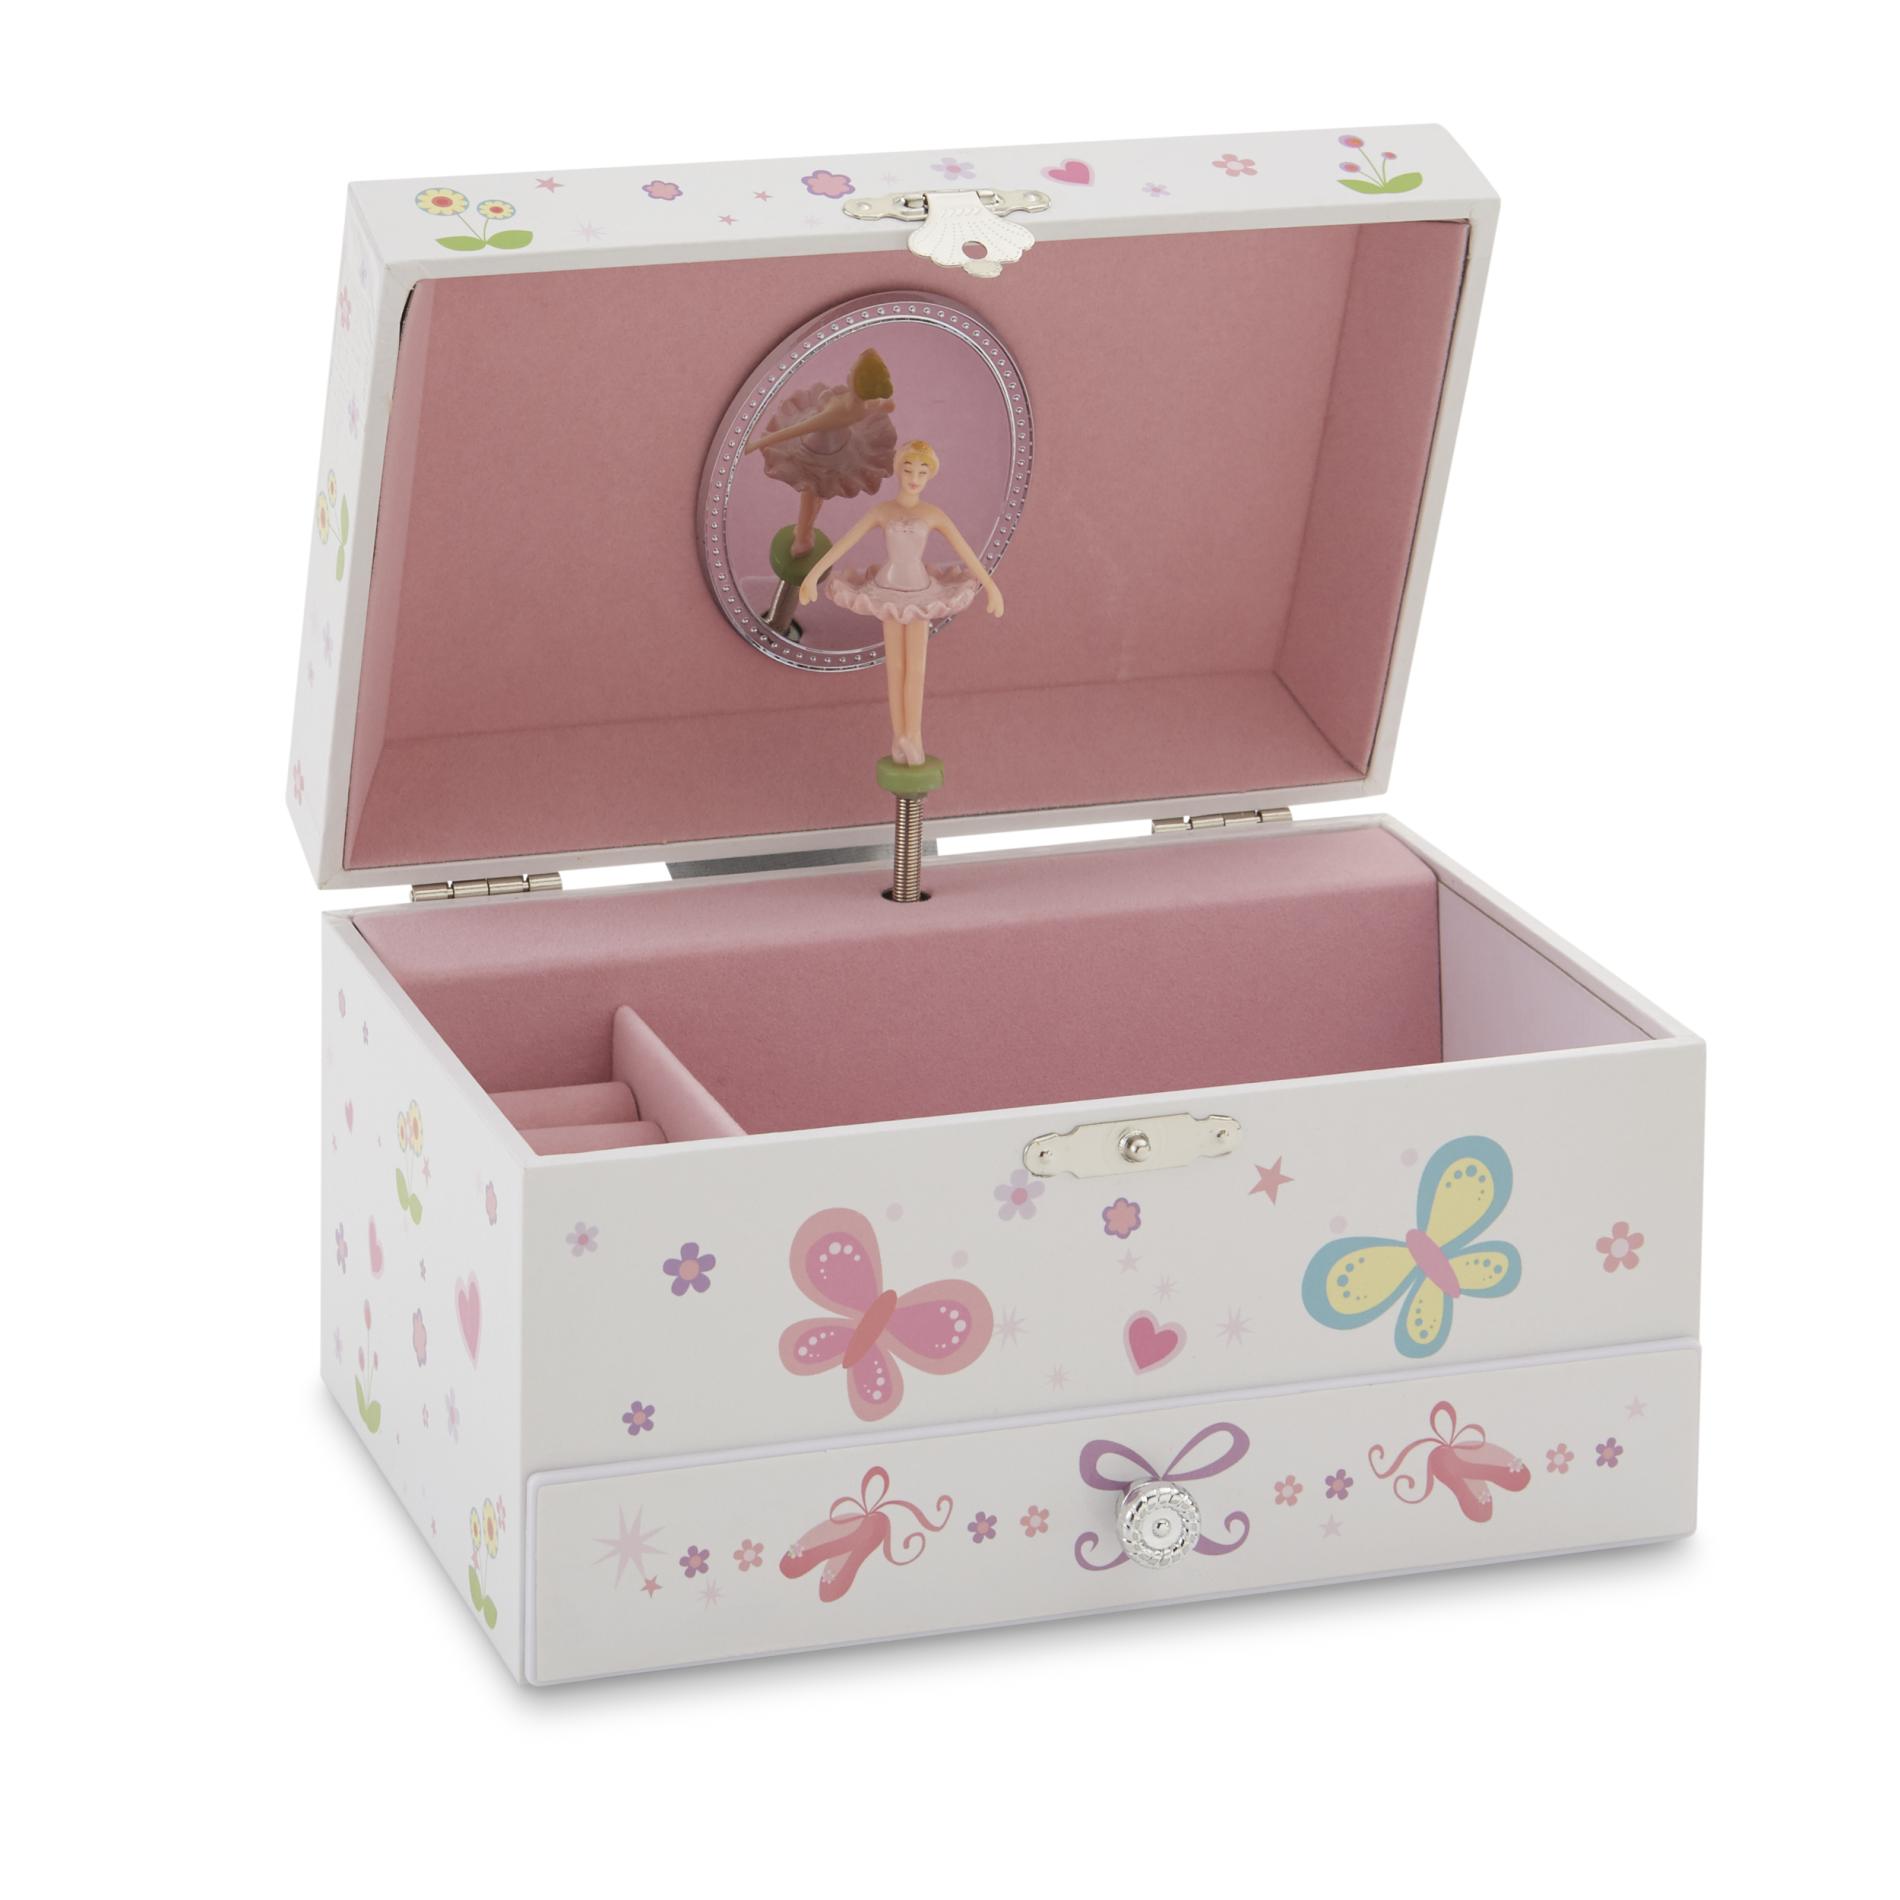 Girl's Musical Ballerina Jewelry Box